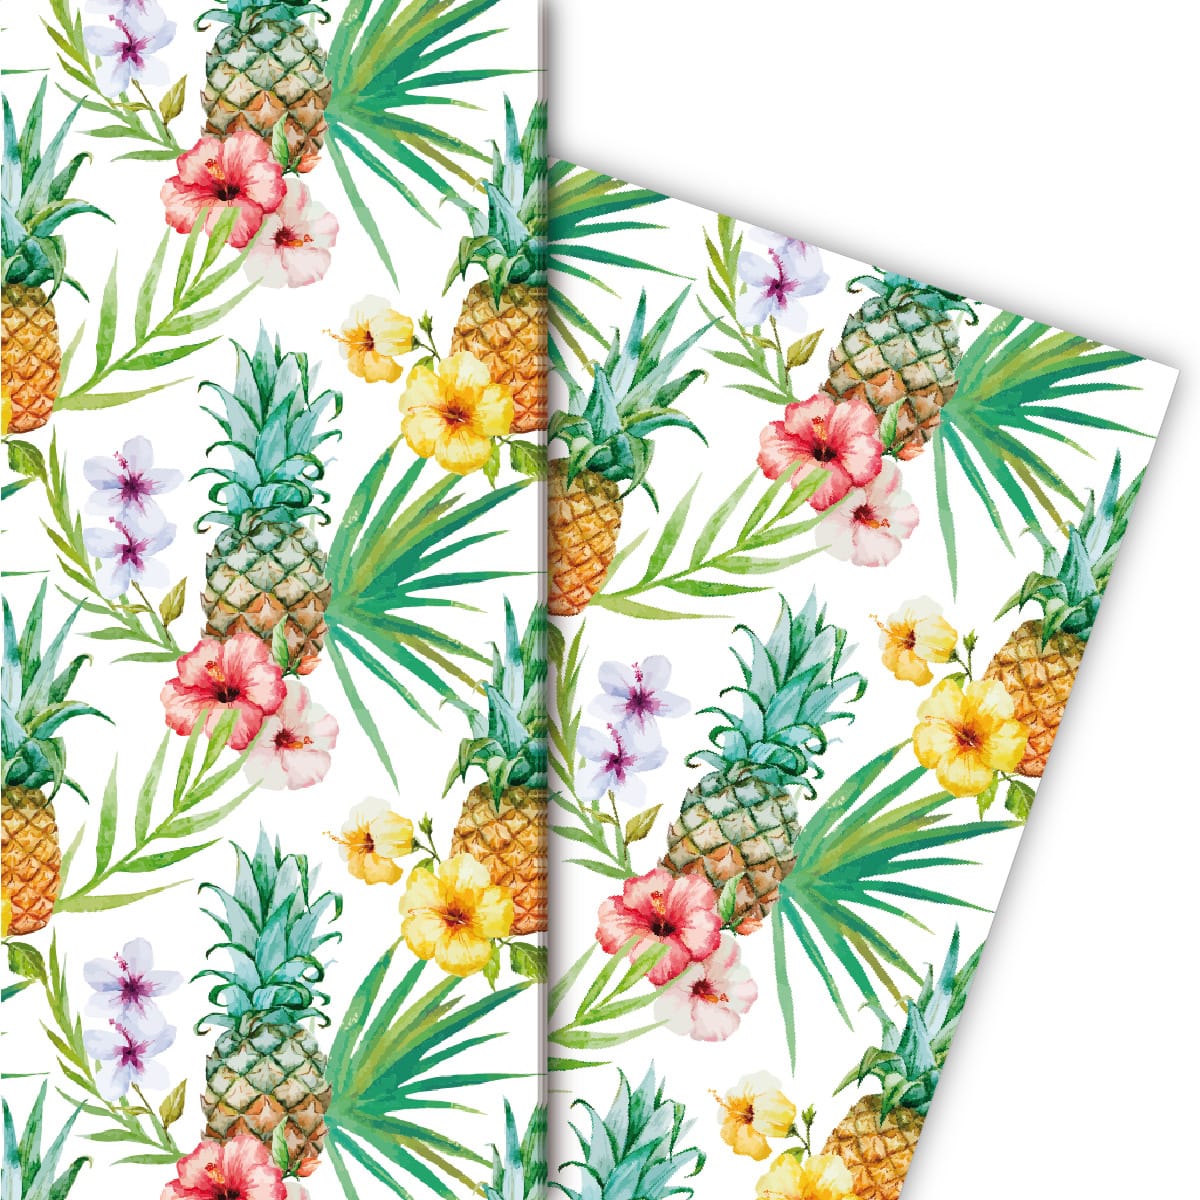 Kartenkaufrausch: Tropisches Sommer Geschenkpapier mit aus unserer Geburtstags Papeterie in multicolor